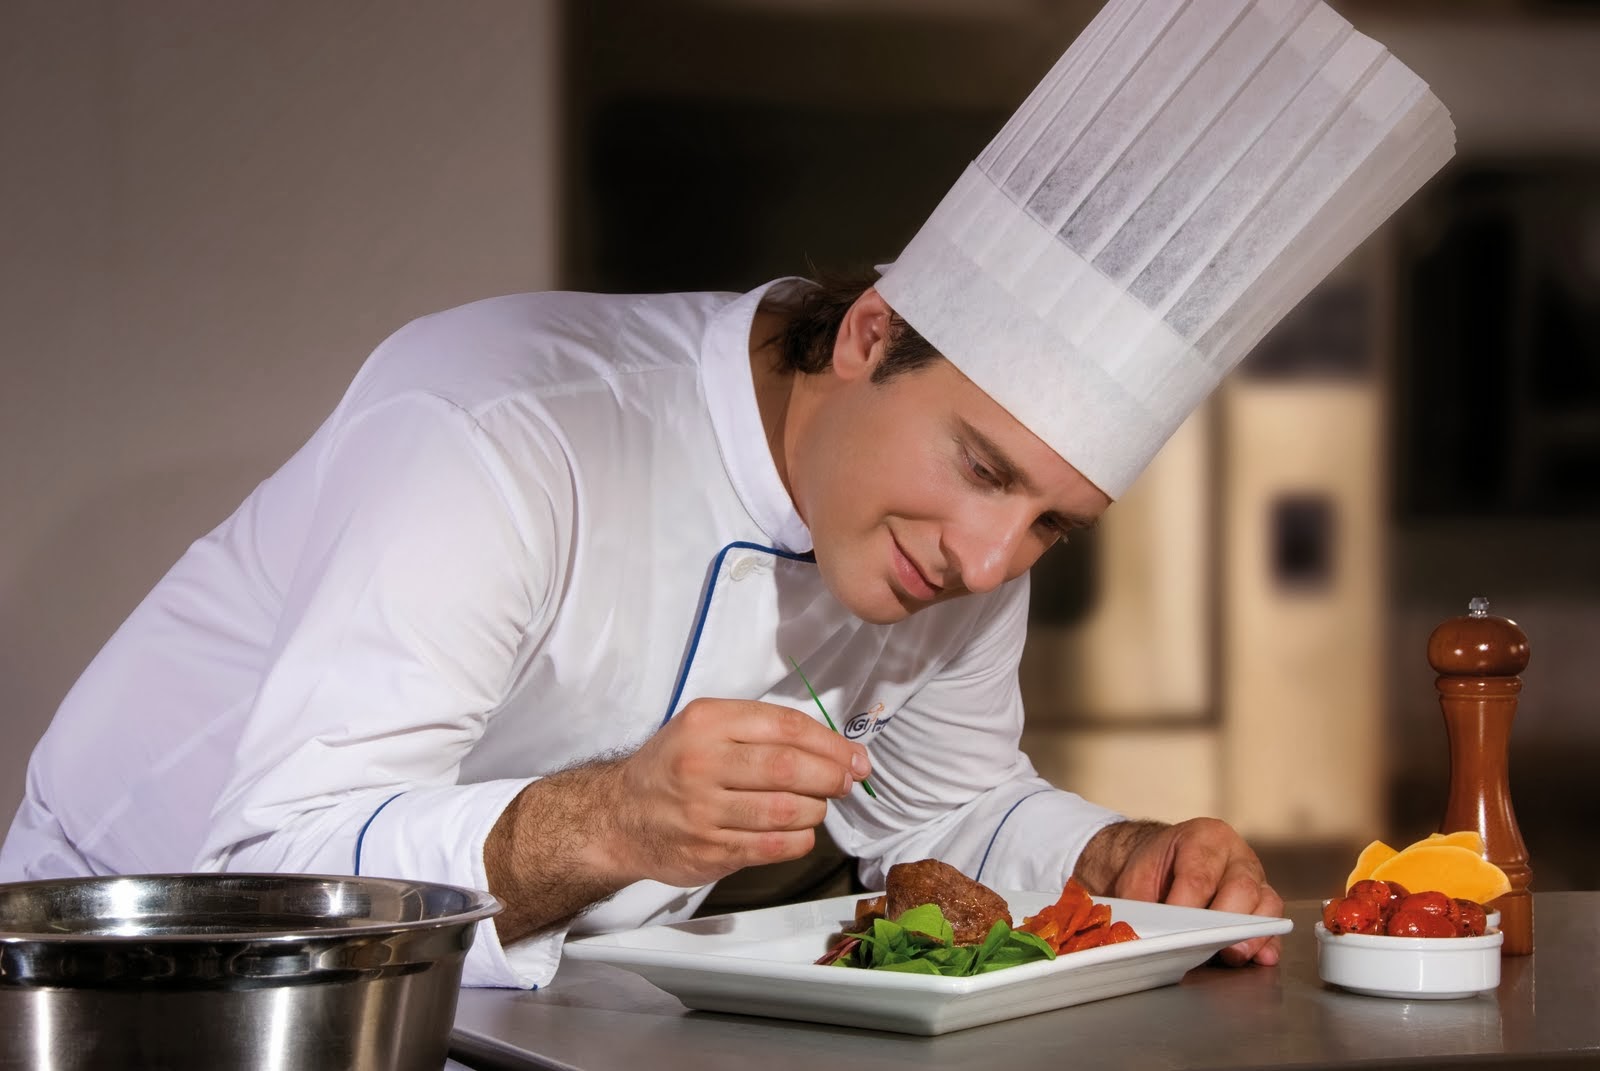 Hotel busca Chef Espa帽ol para trabajar en 2014 Islandia24